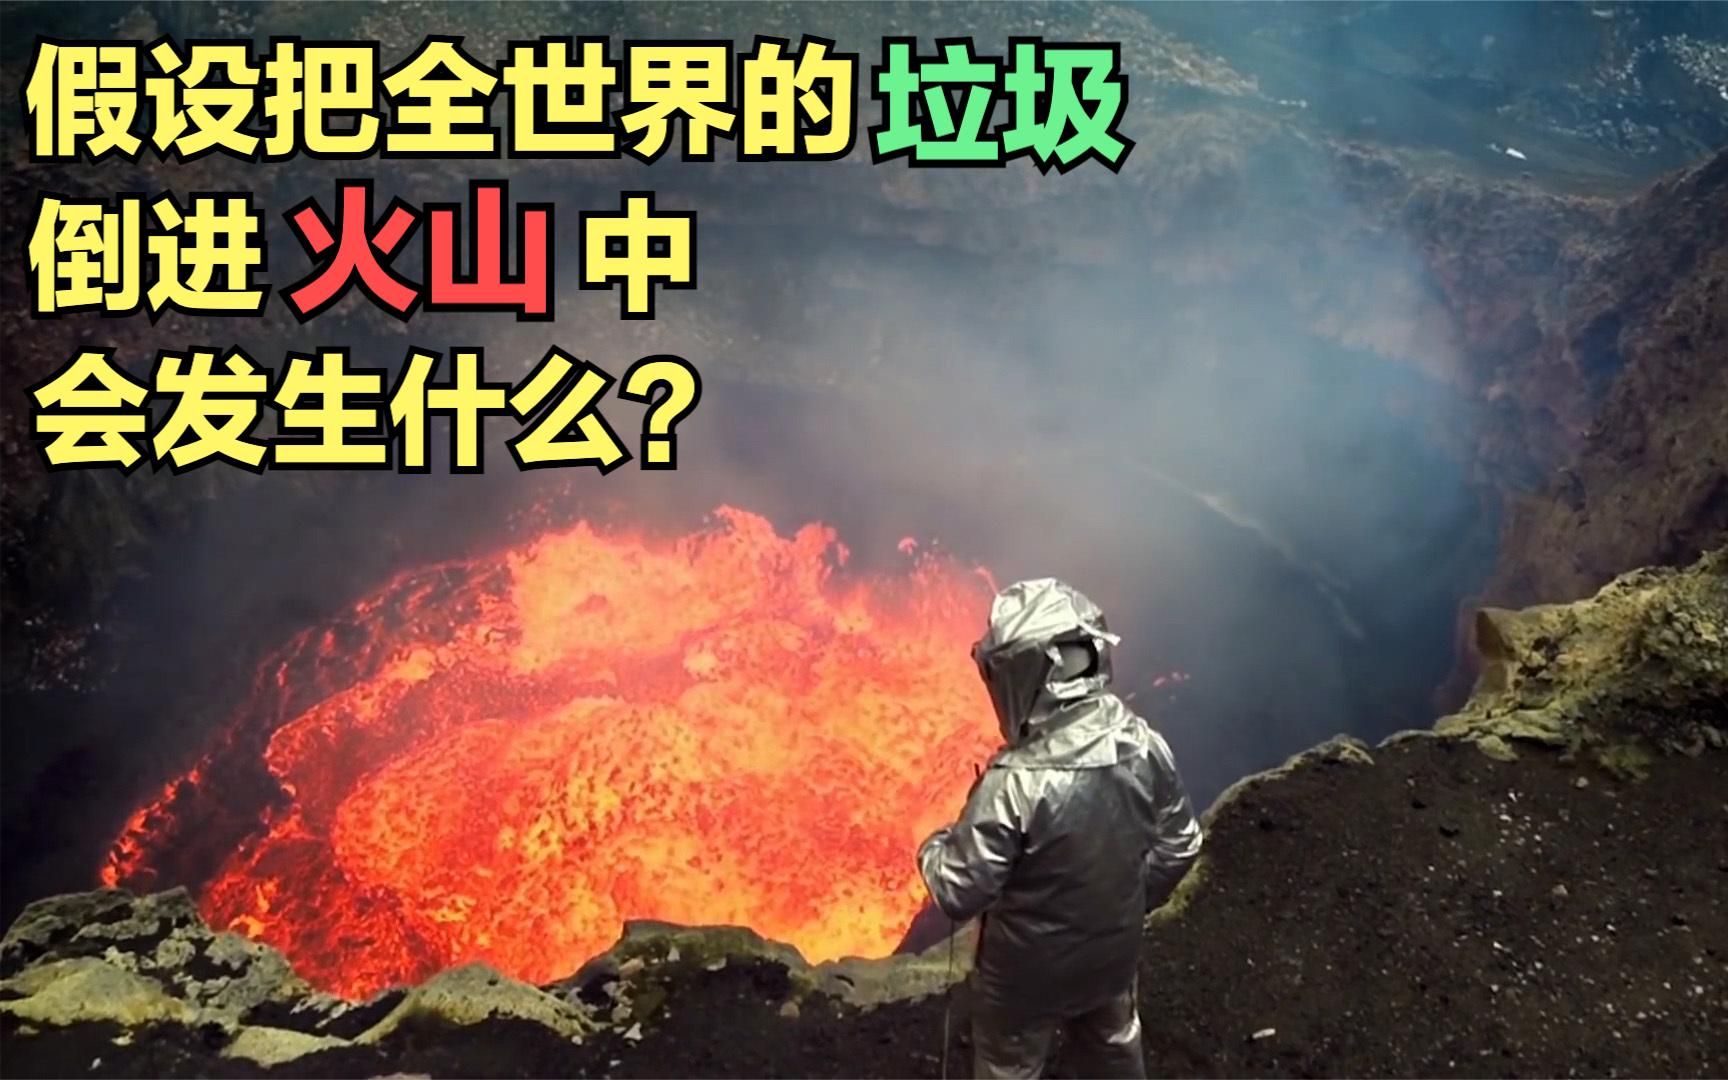 假设把全世界的垃圾，都倒进火山中，会发生什么？